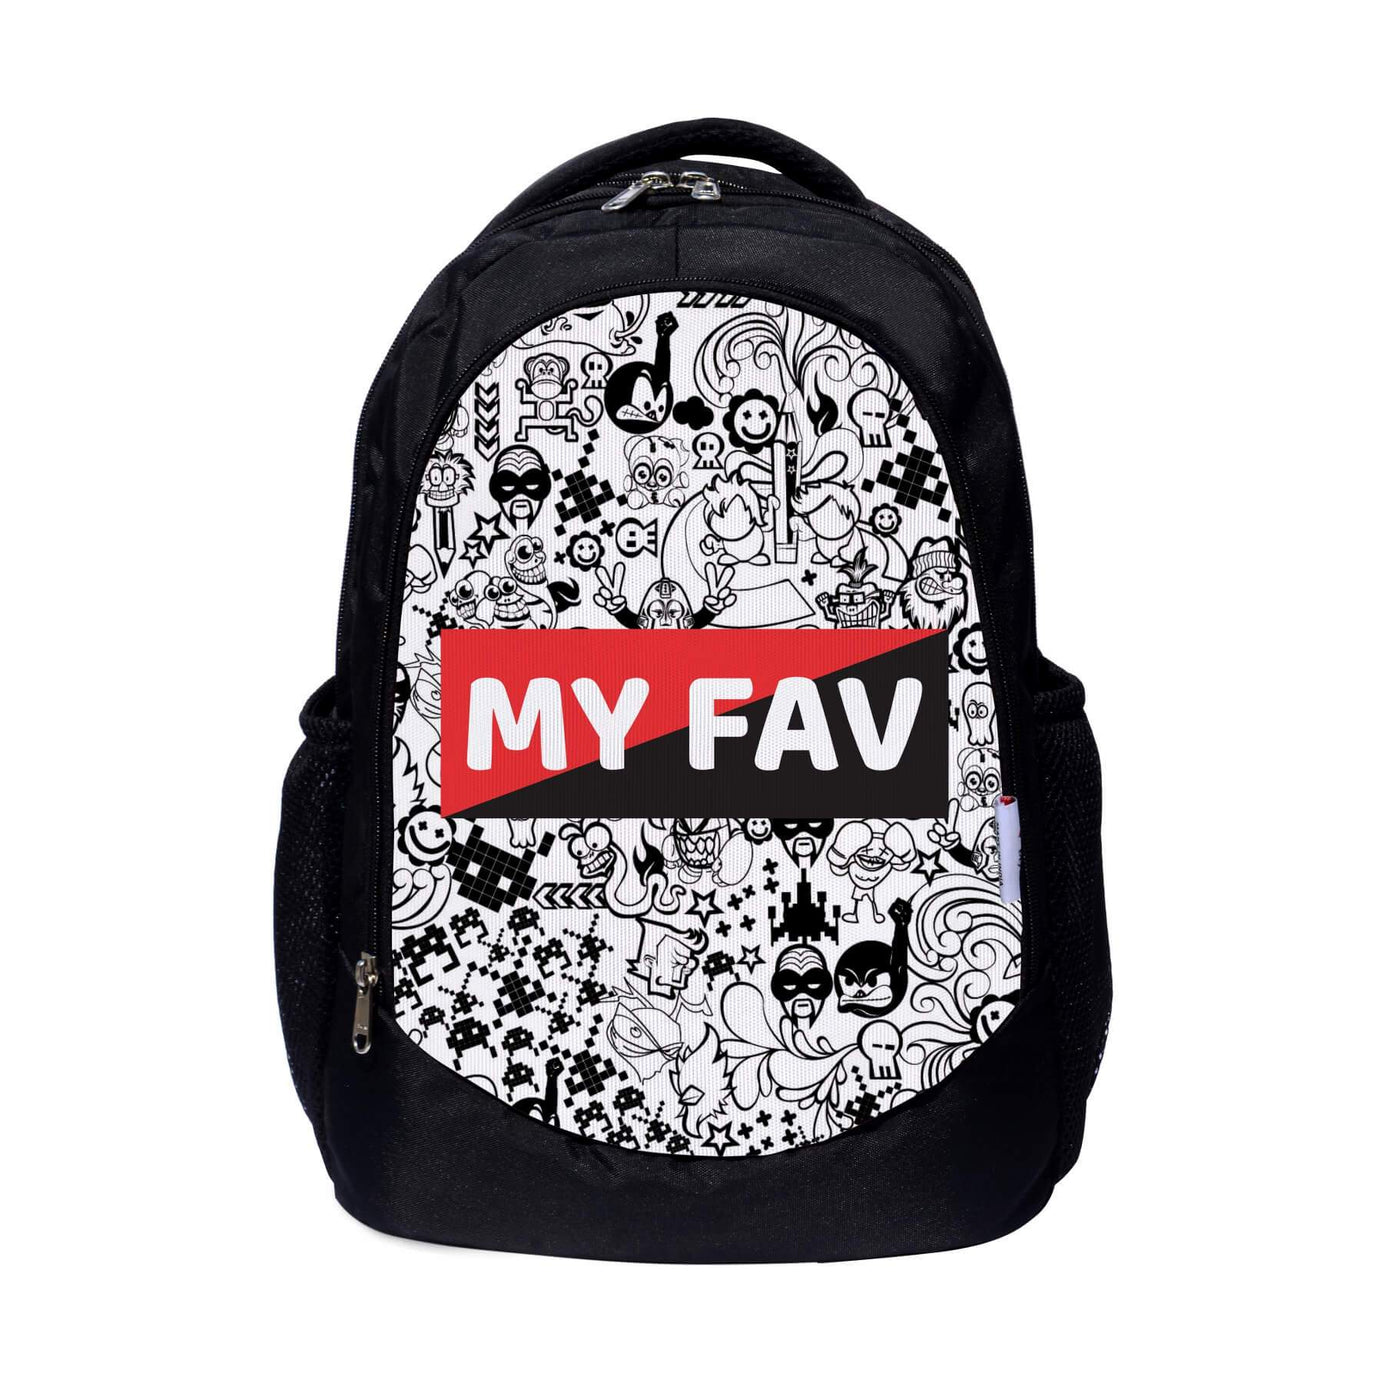 My Fav Digital Print Laptop Backpack for Men Women / School Bag for Boys & Girls